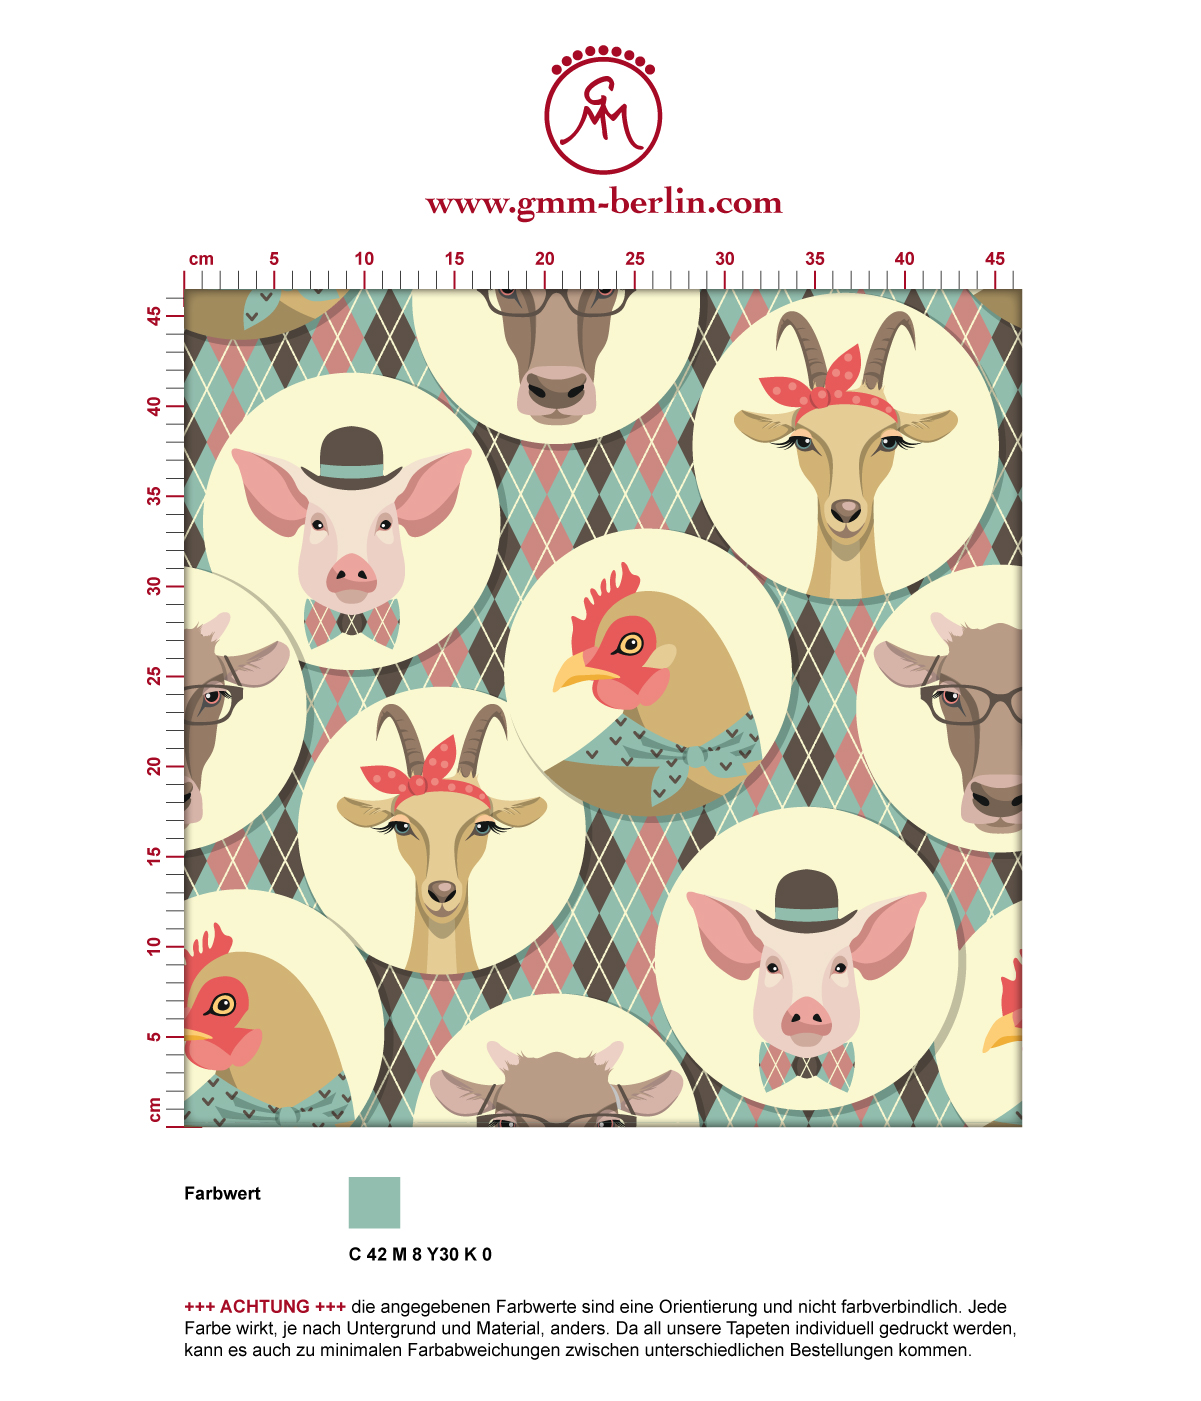 "Funny Portrait Gallery" mit lustigen Schweinen, Ziegen und Kühen auf Schotten Karo in türkis - groß angepasst an CMYK Wandfarben. Aus dem GMM-BERLIN.com Sortiment: Schöne Tapeten in der Farbe: dunkel braun